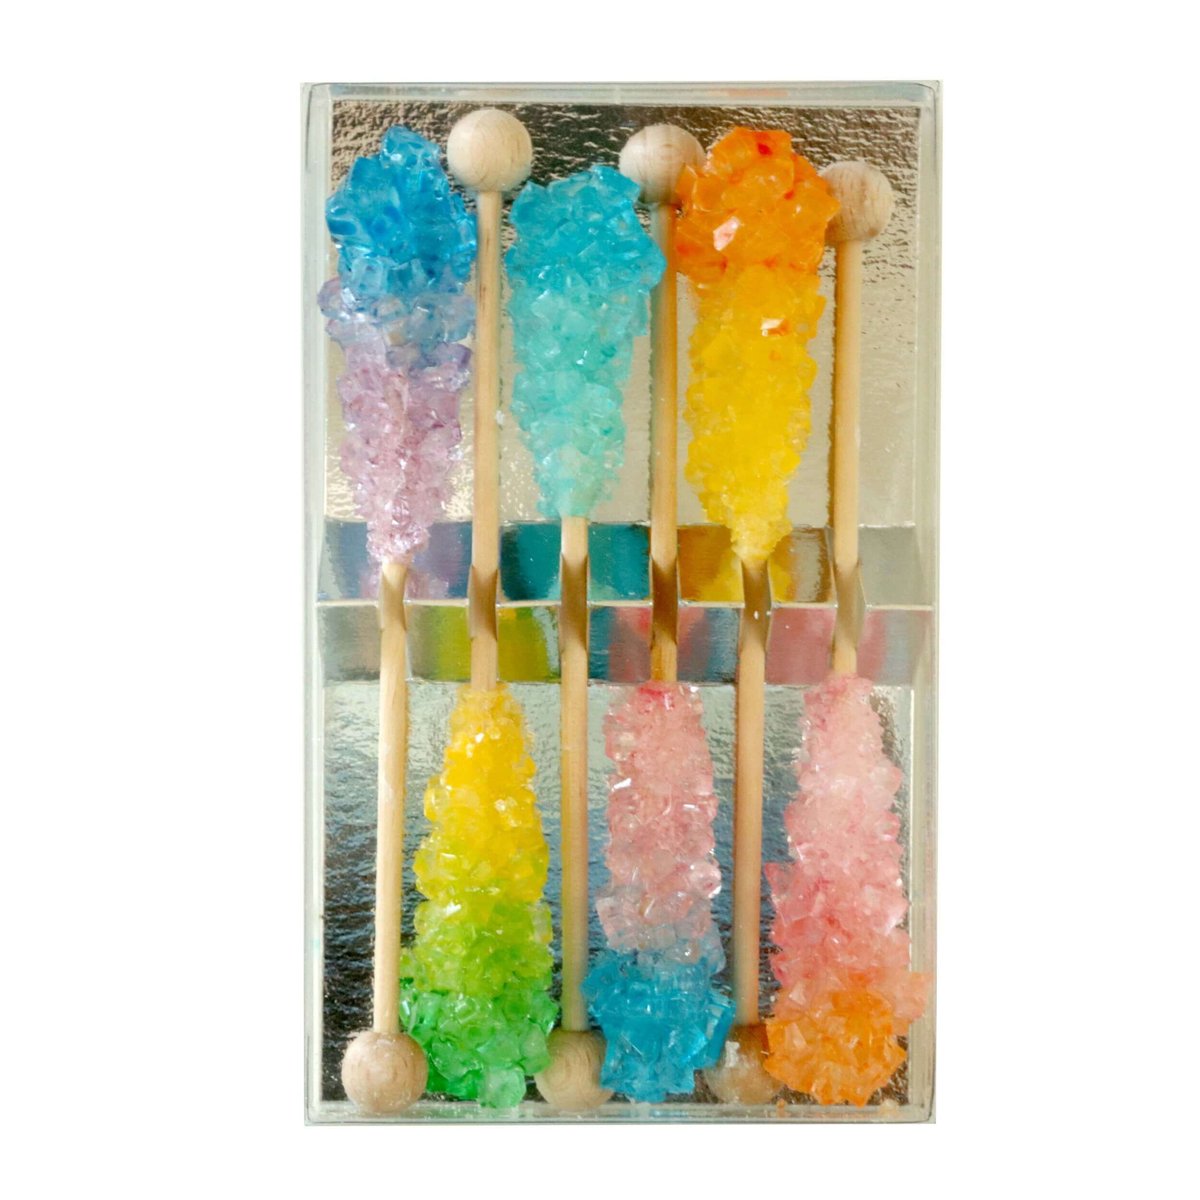 Zestaw pałeczek cukrowych - kolorowe Sugar sticks do słodzenia i dekoracji herbaty, kawy, cold brew oraz koktajli